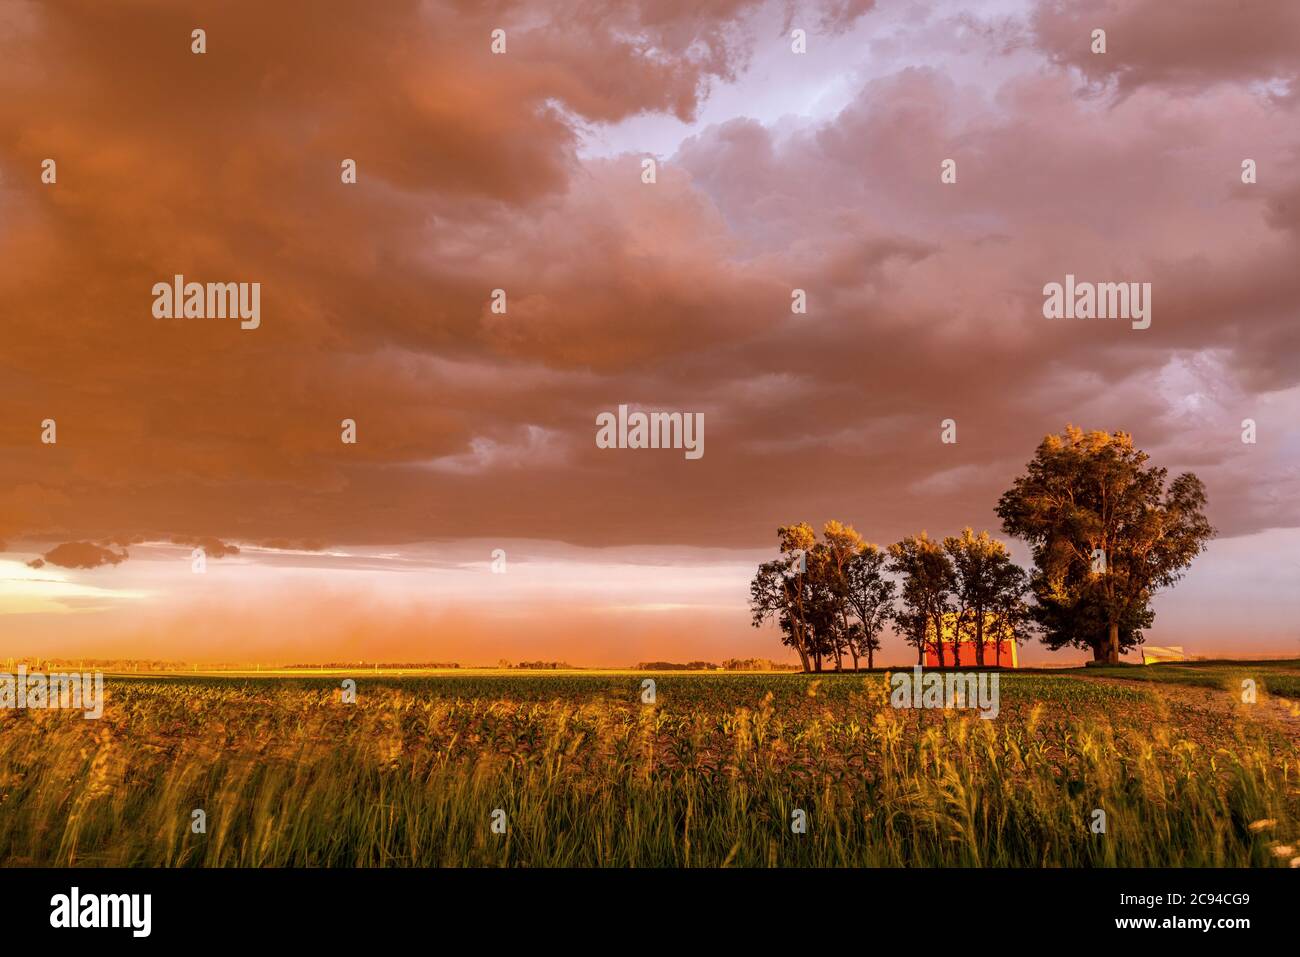 Ein großer Staubsturm weht bei Sonnenuntergang über ein Feld und zu Hause und wirft einen lebendigen, tiefen Orange über den Horizont. Stockfoto